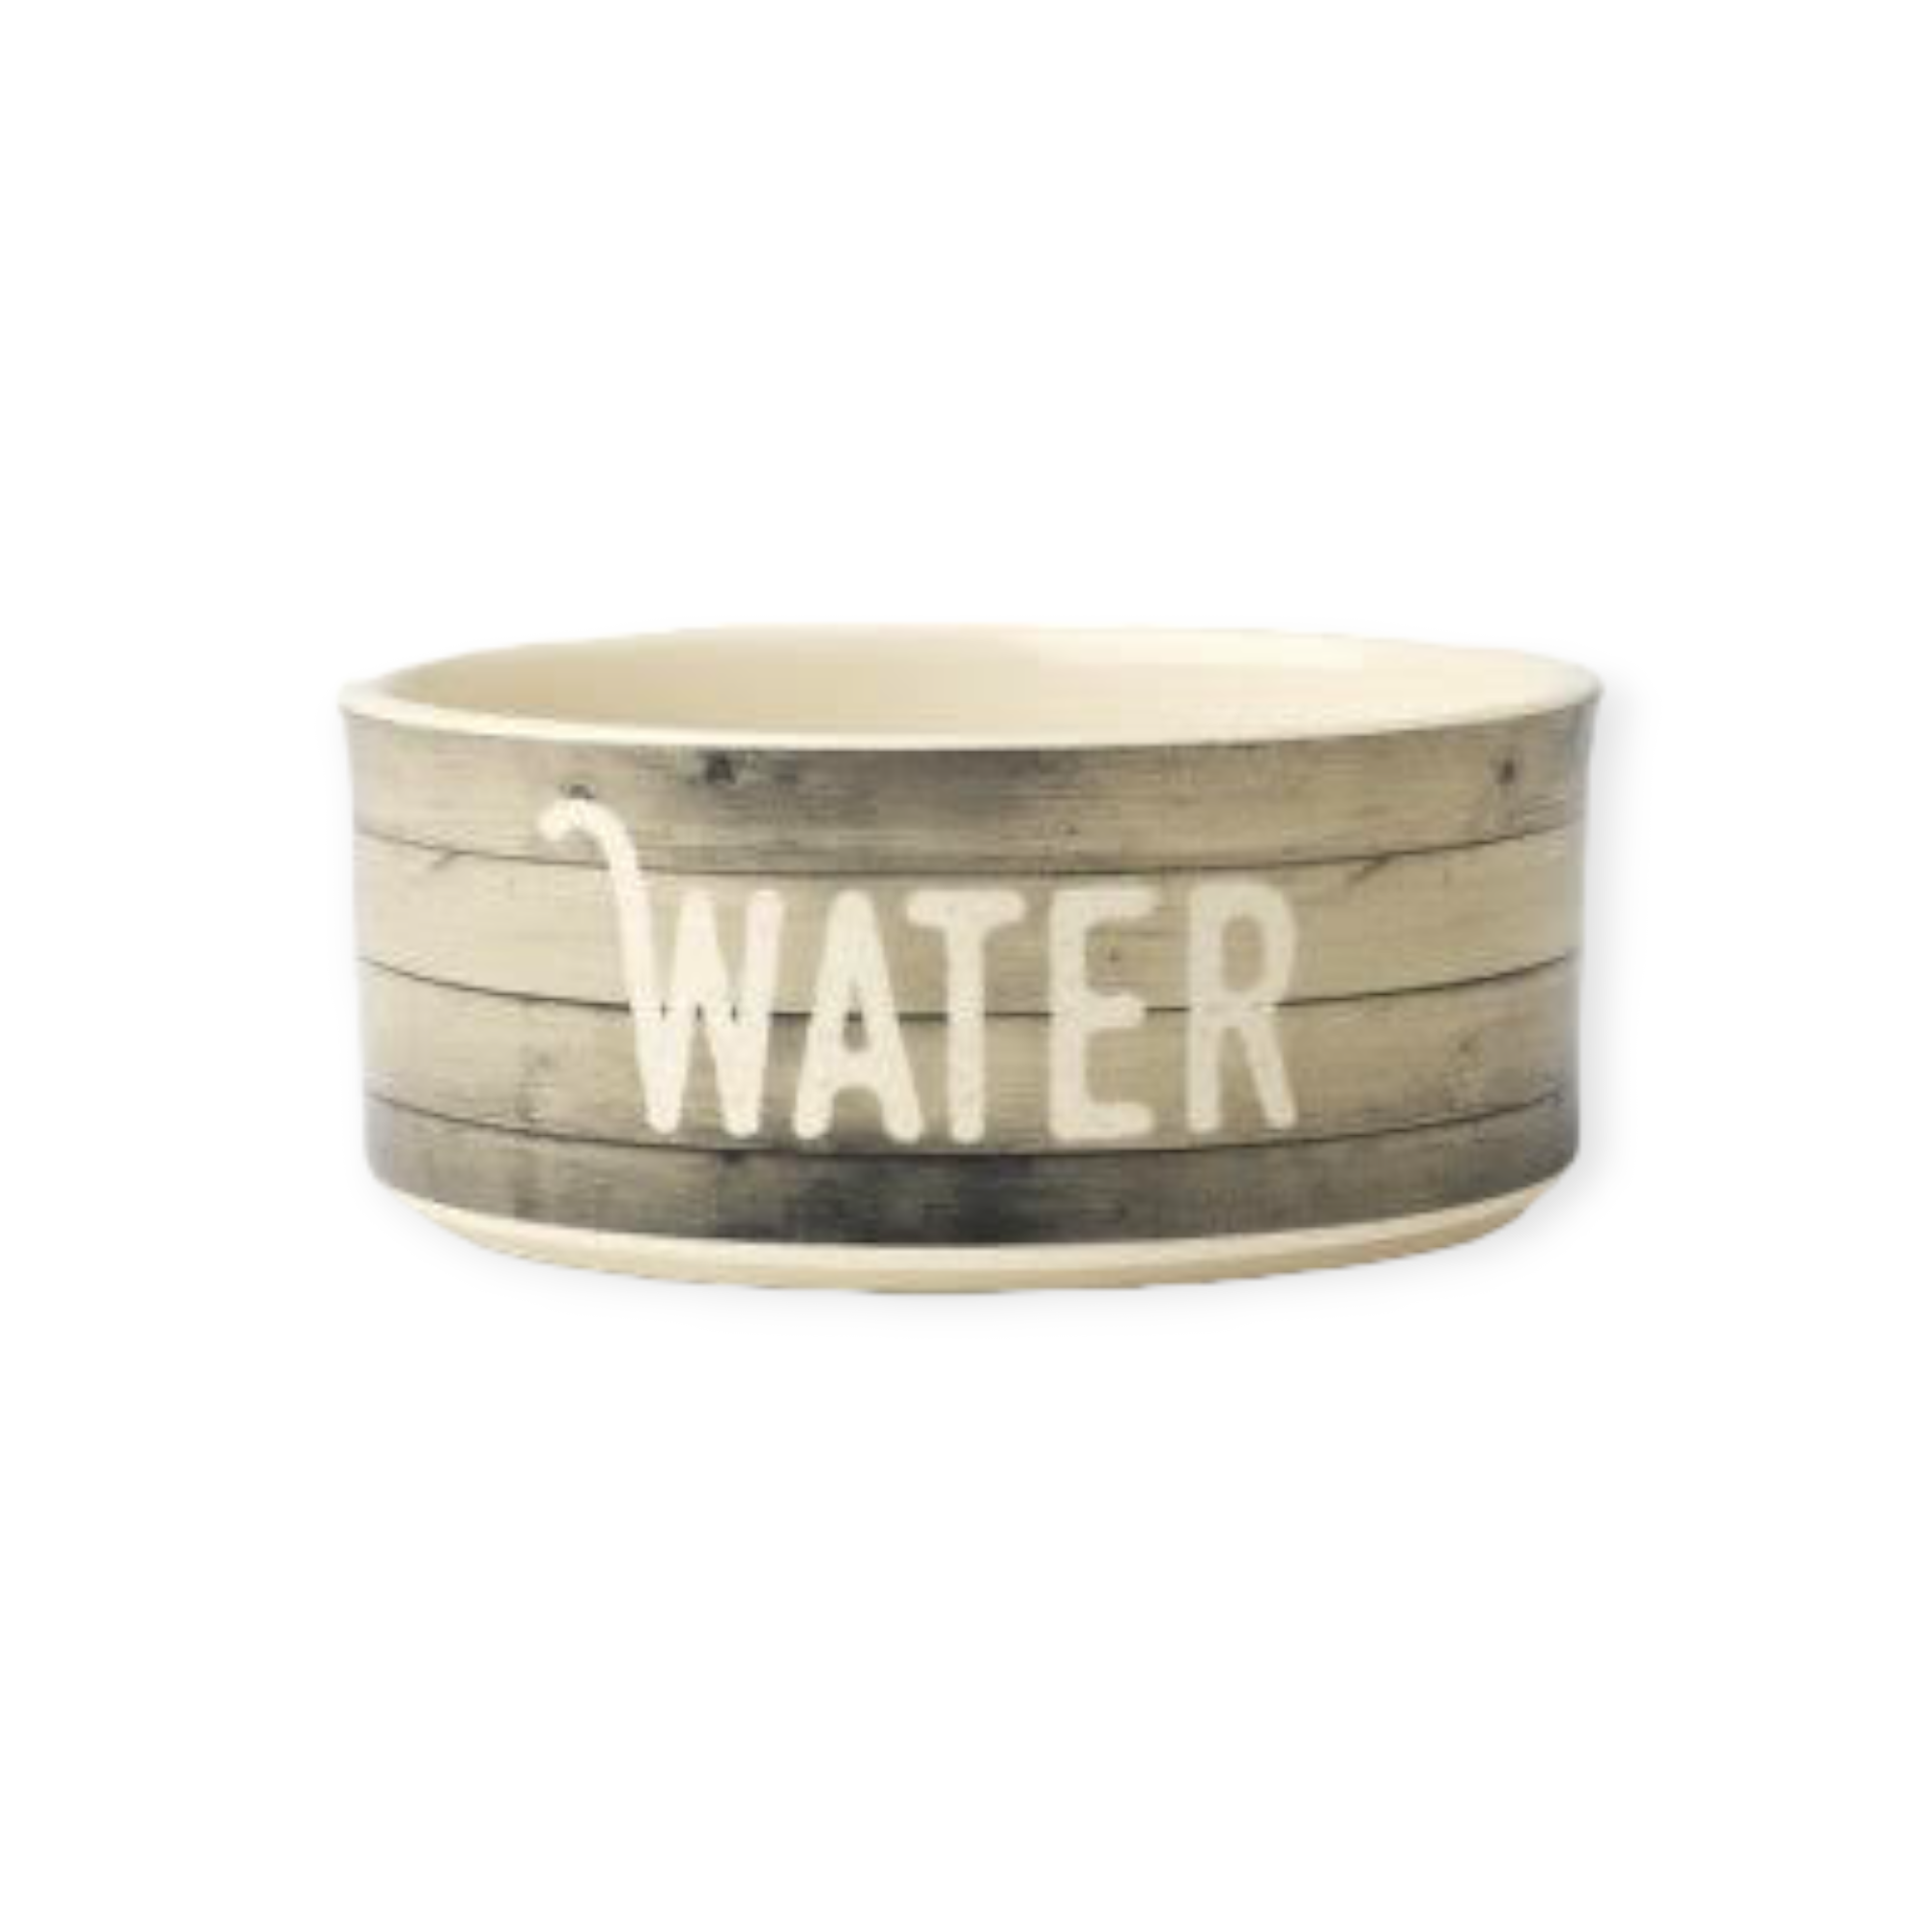 Foderskål - Keramik “food/water”